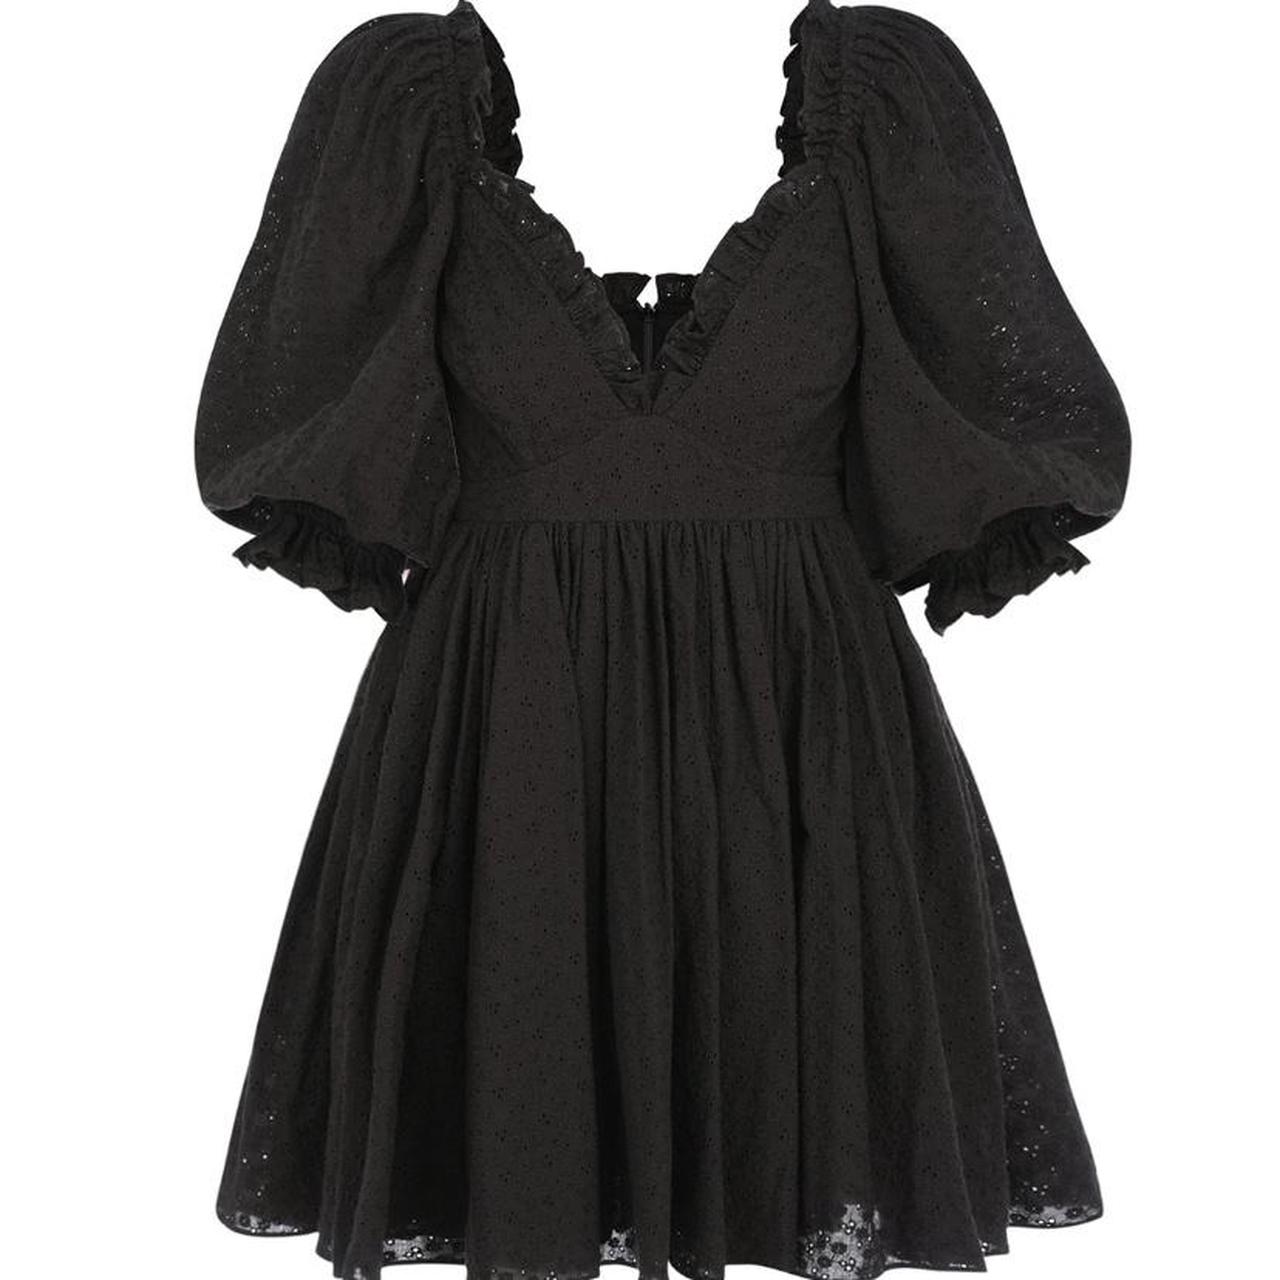 Selkie Women's Black Dress | Depop